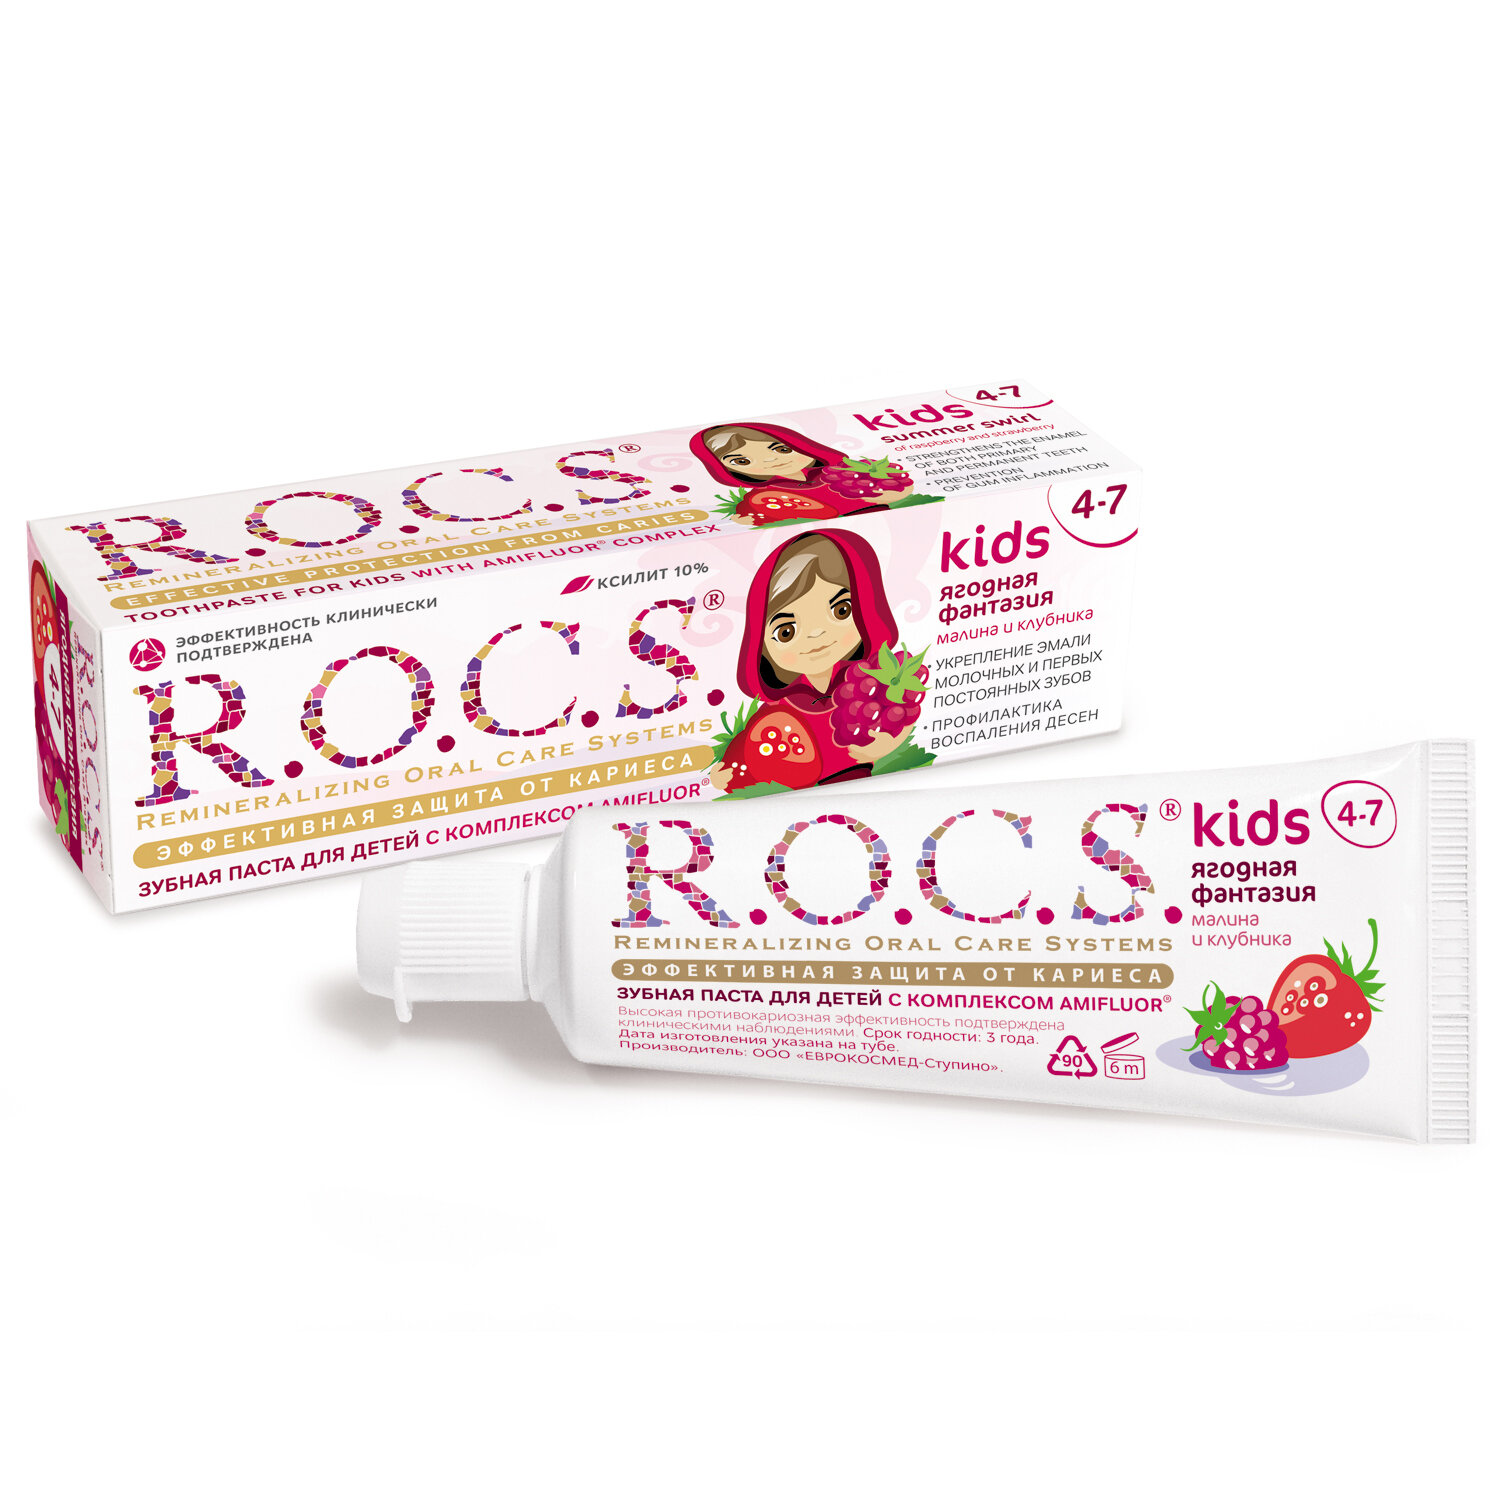 Зубная паста R.O.C.S. для детей малина и клубника, 45 гр